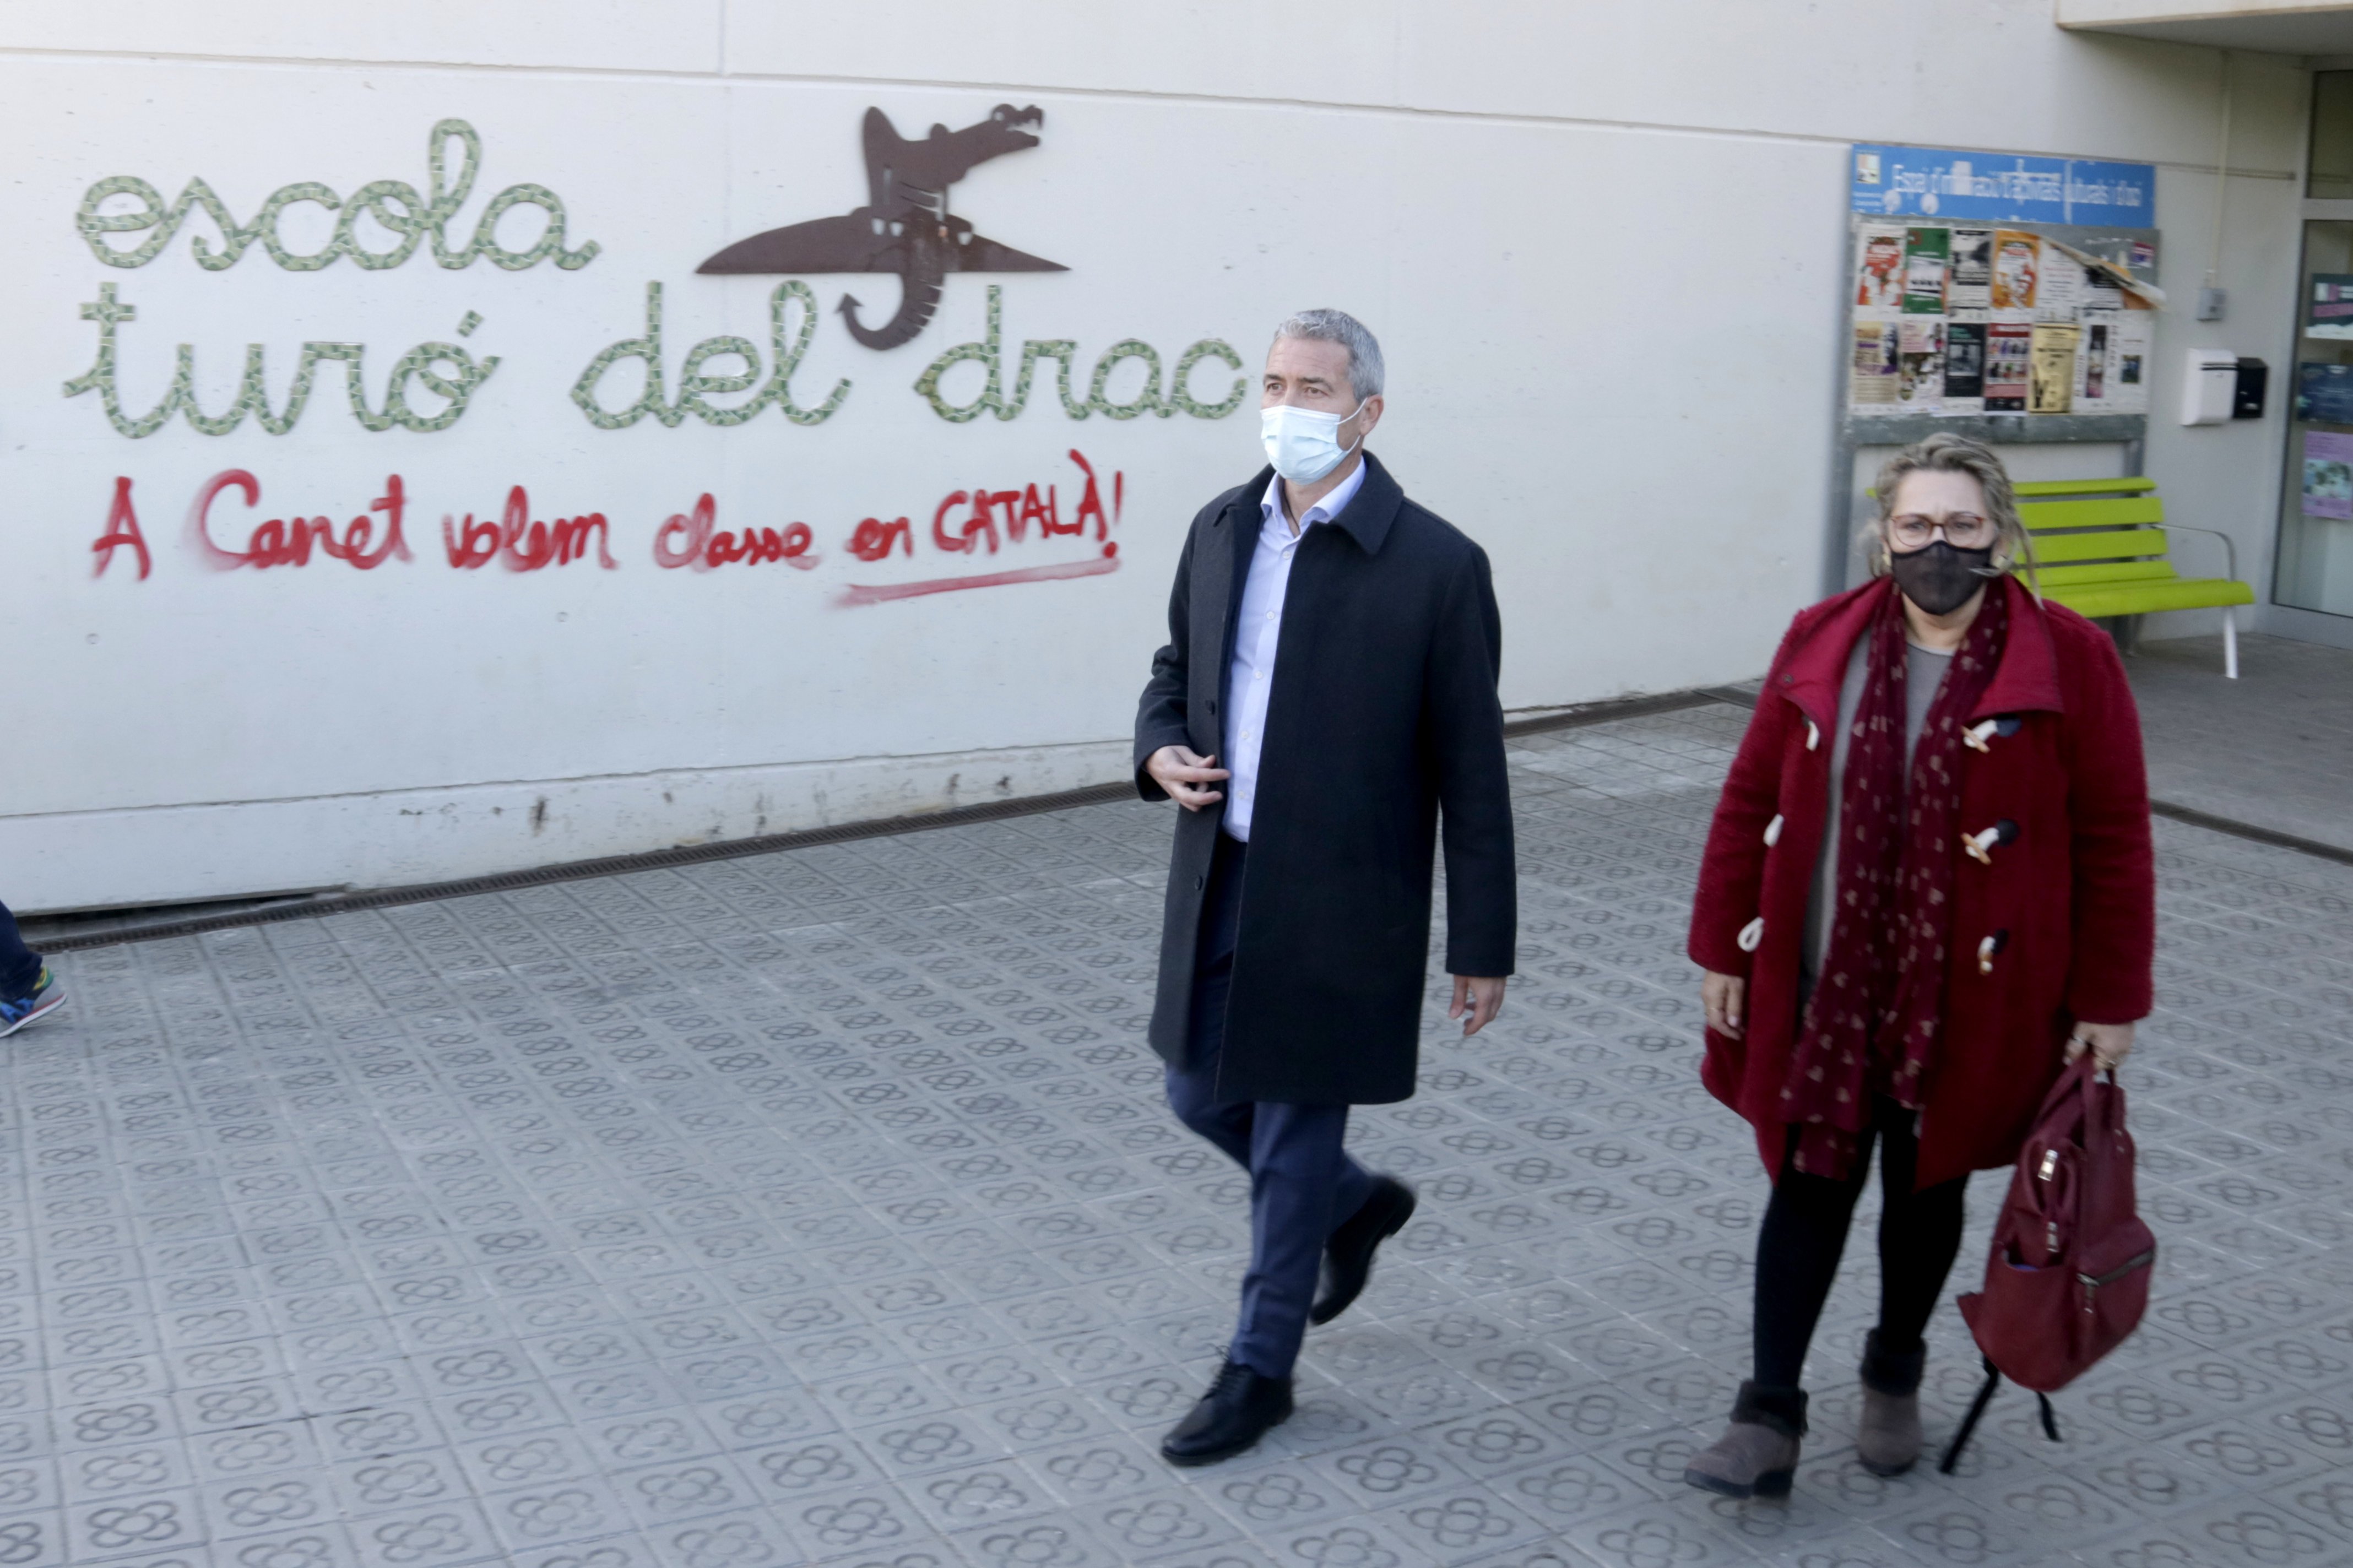 Cambray: "El año que viene, los profesores tendrán que hacer una formación sobre el catalán"